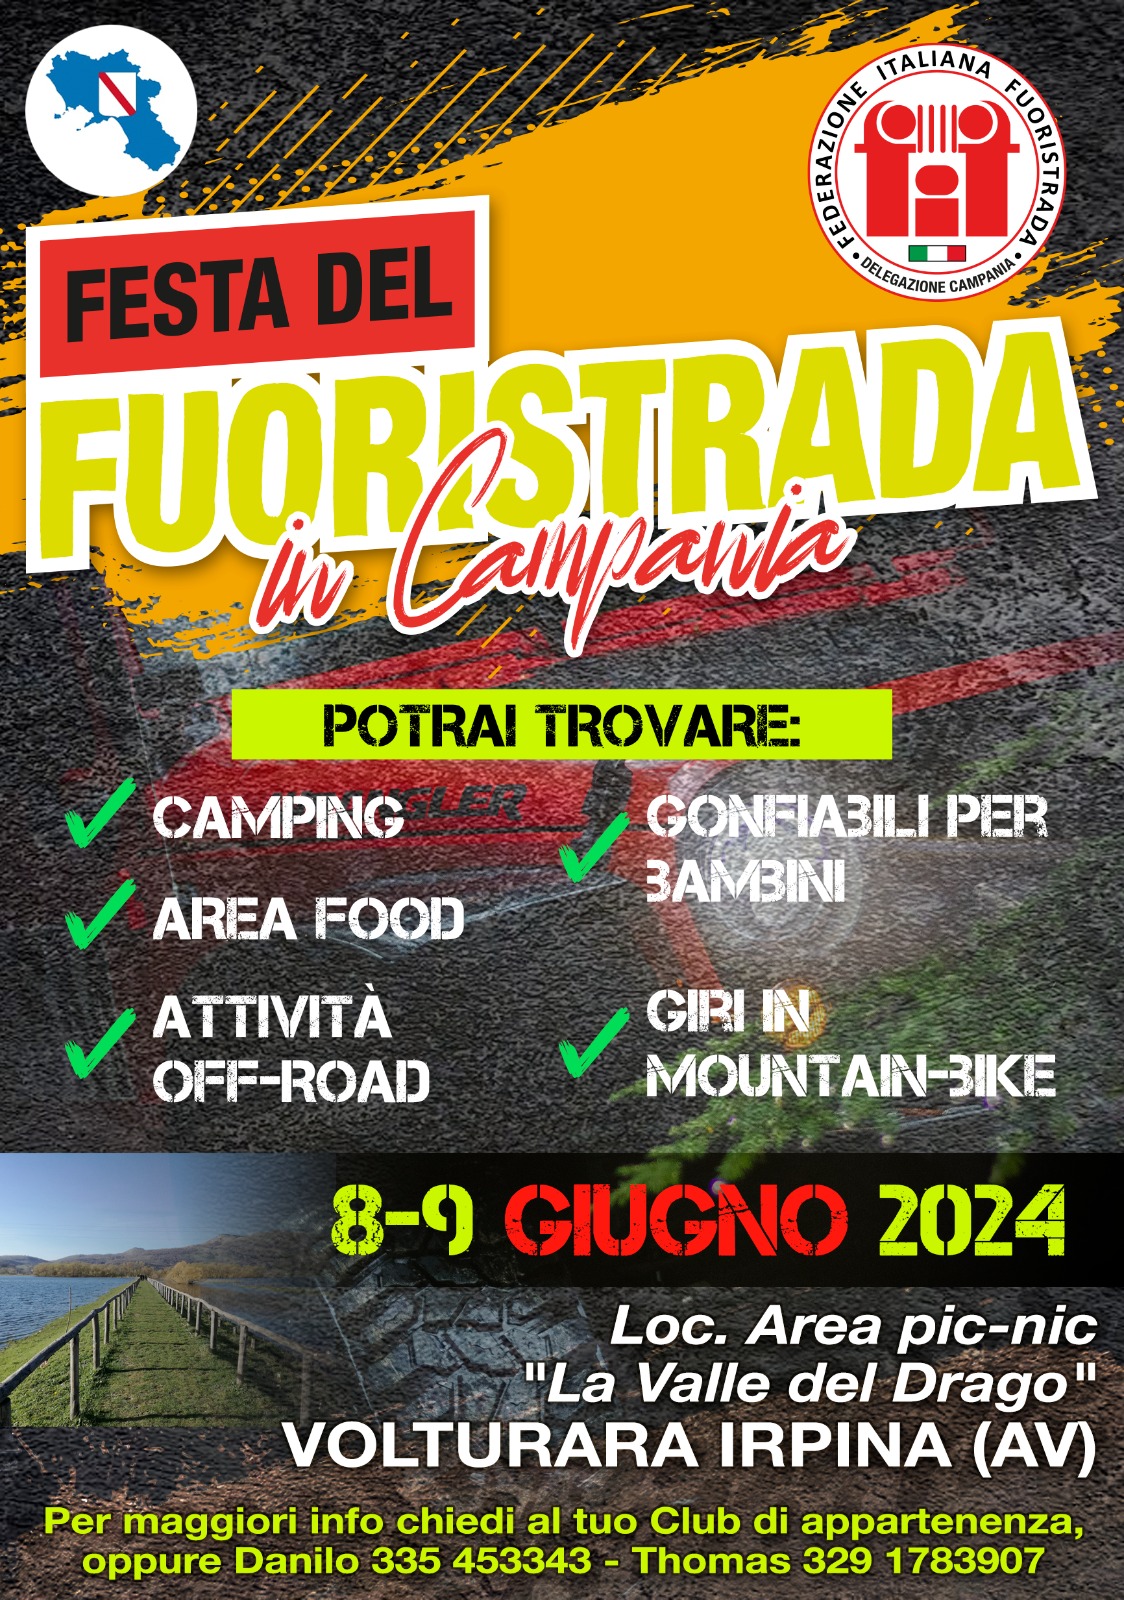 Festa del Fuoristrada in Campania della DELEGAZIONE CAMPANIA FIF 4X4